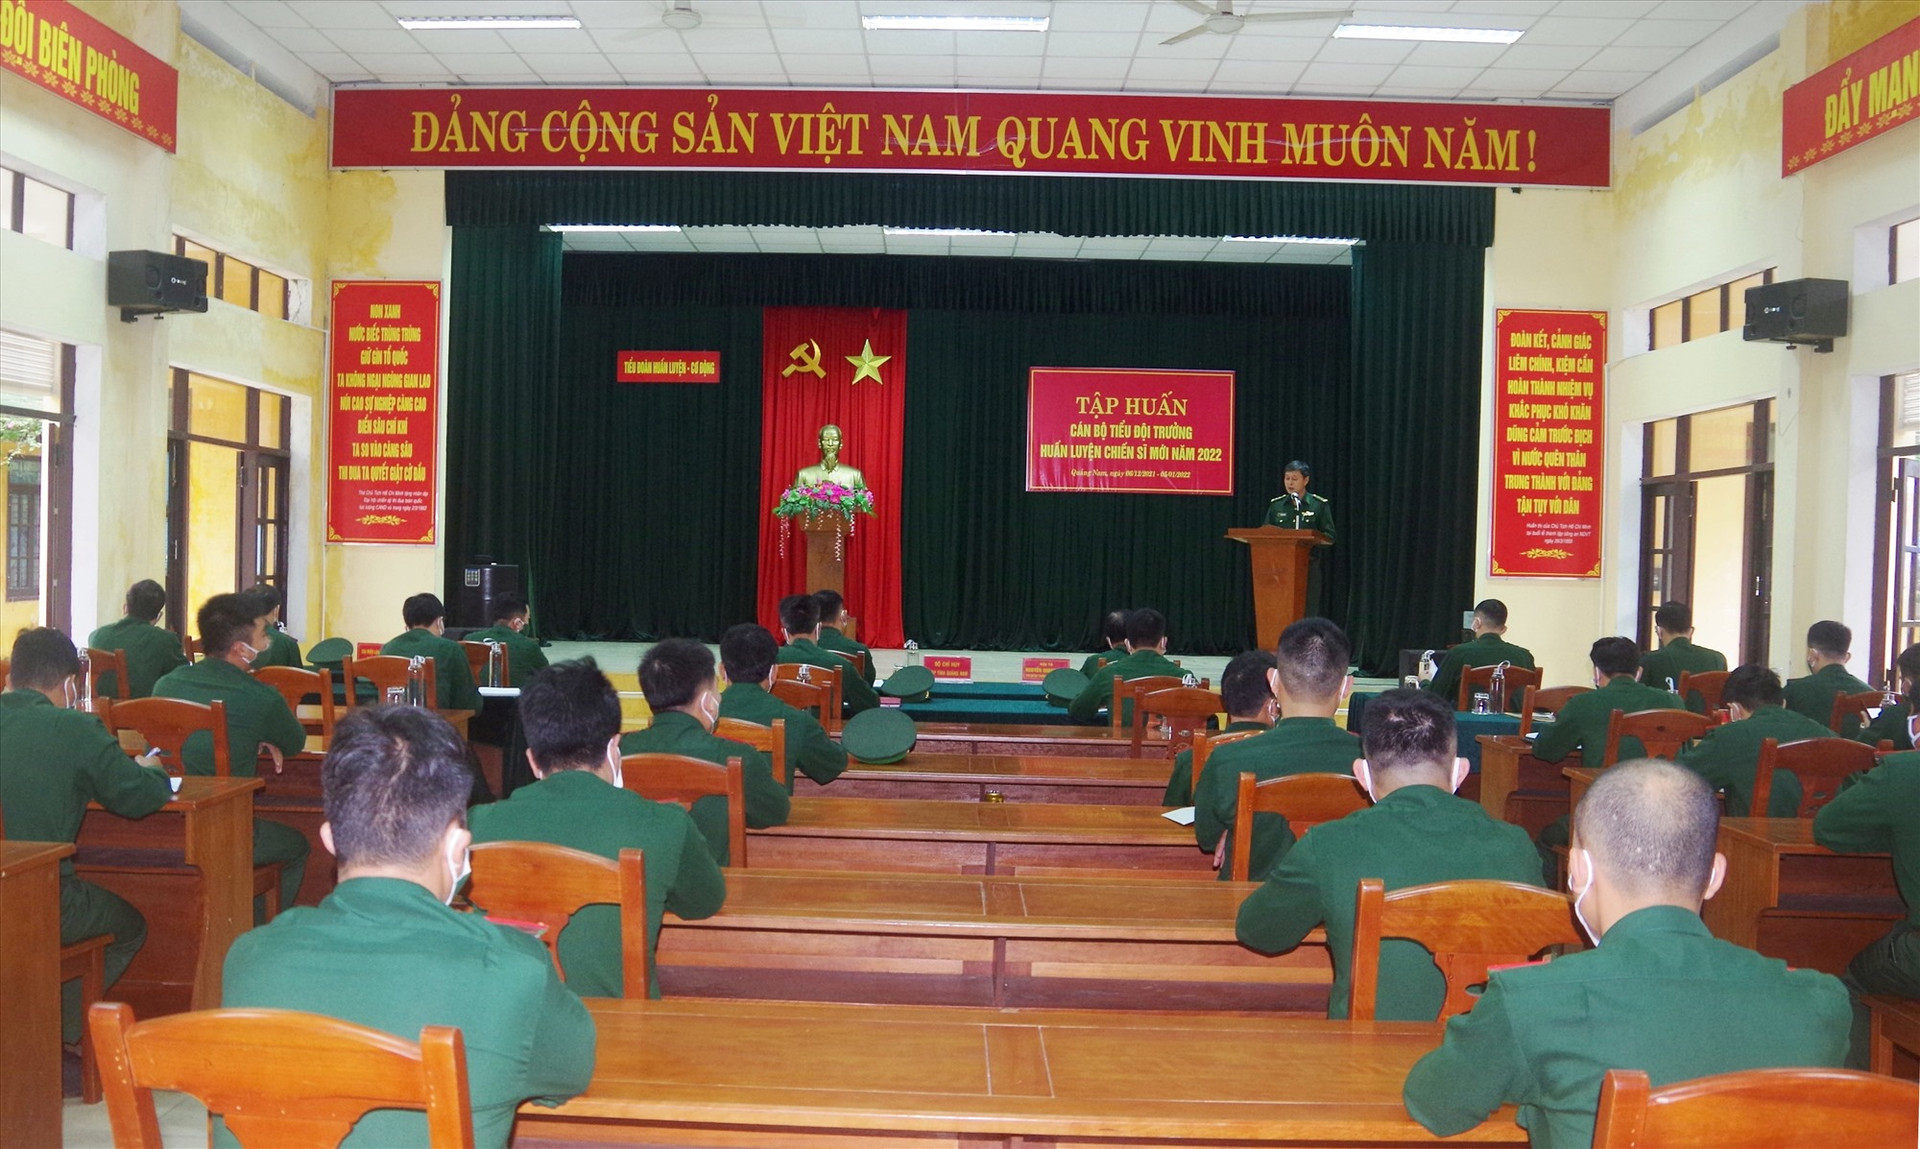 Quang cảnh khai mạc Tập huấn cán bộ Tiểu đội trưởng năm 2022